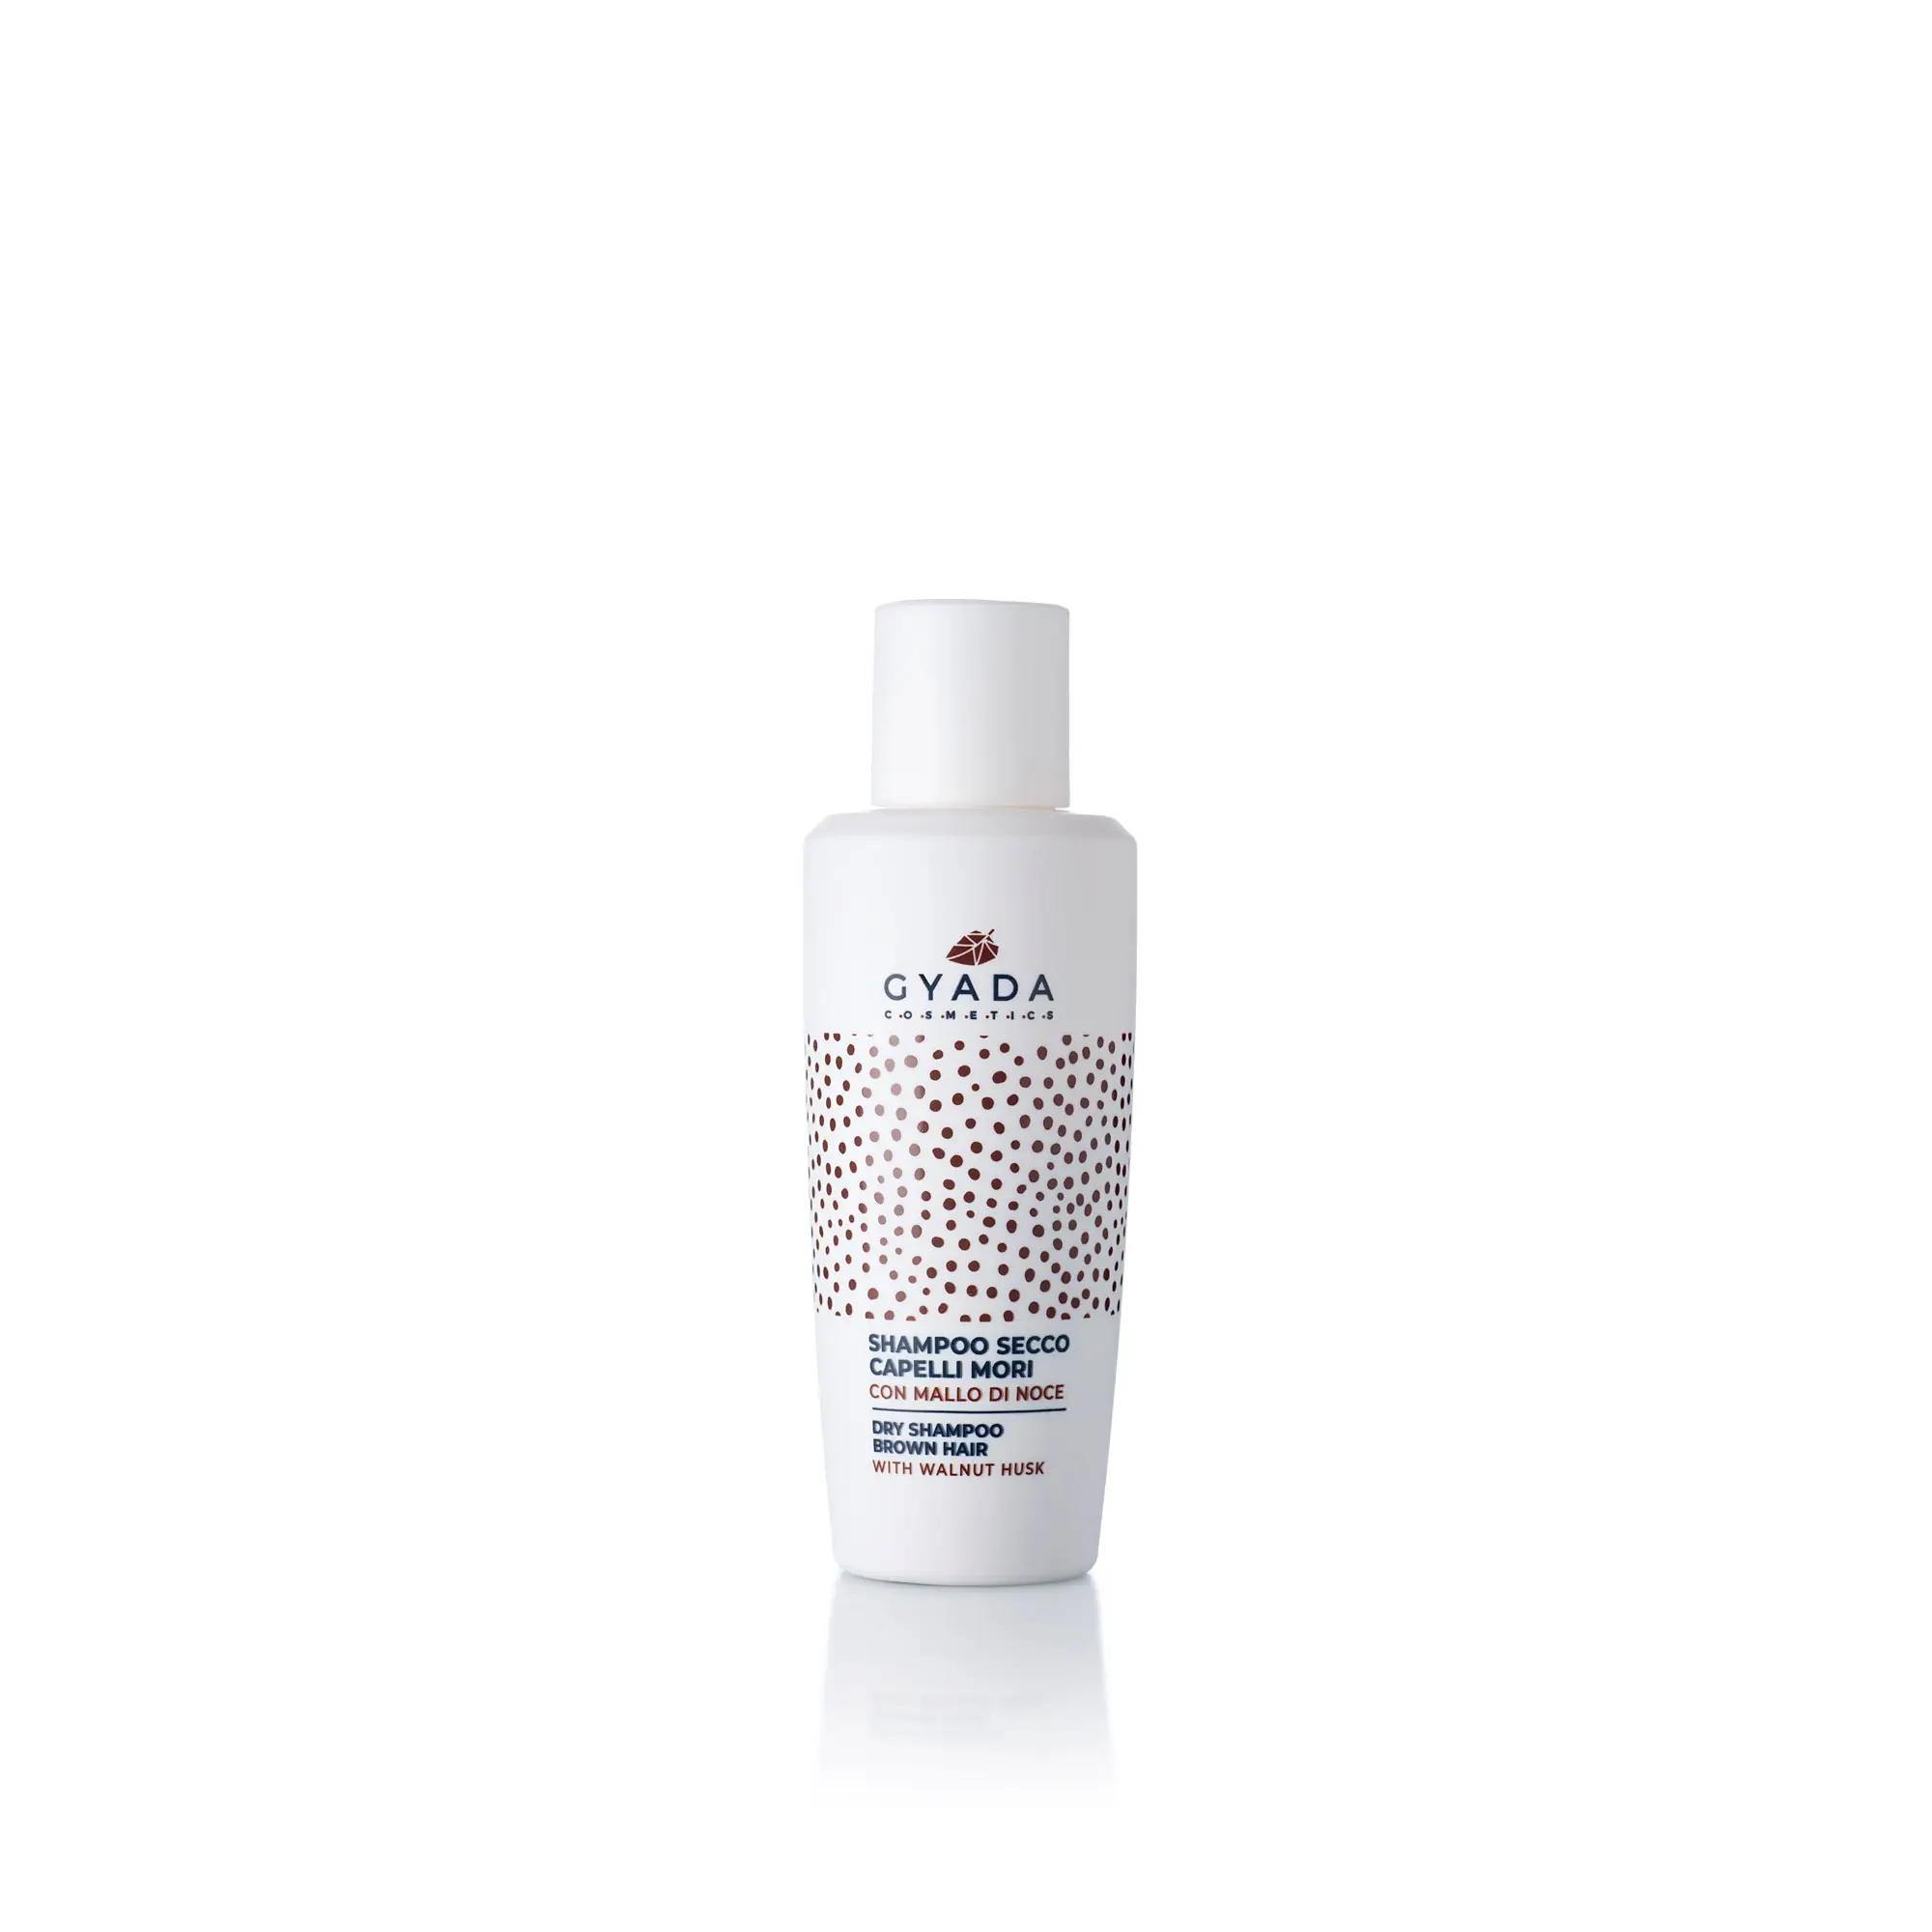 GYADA — shampooing sec en poudre pour cheveux bruns, produit frais d'italie, traitement démêlante, brosse de soins, 50g